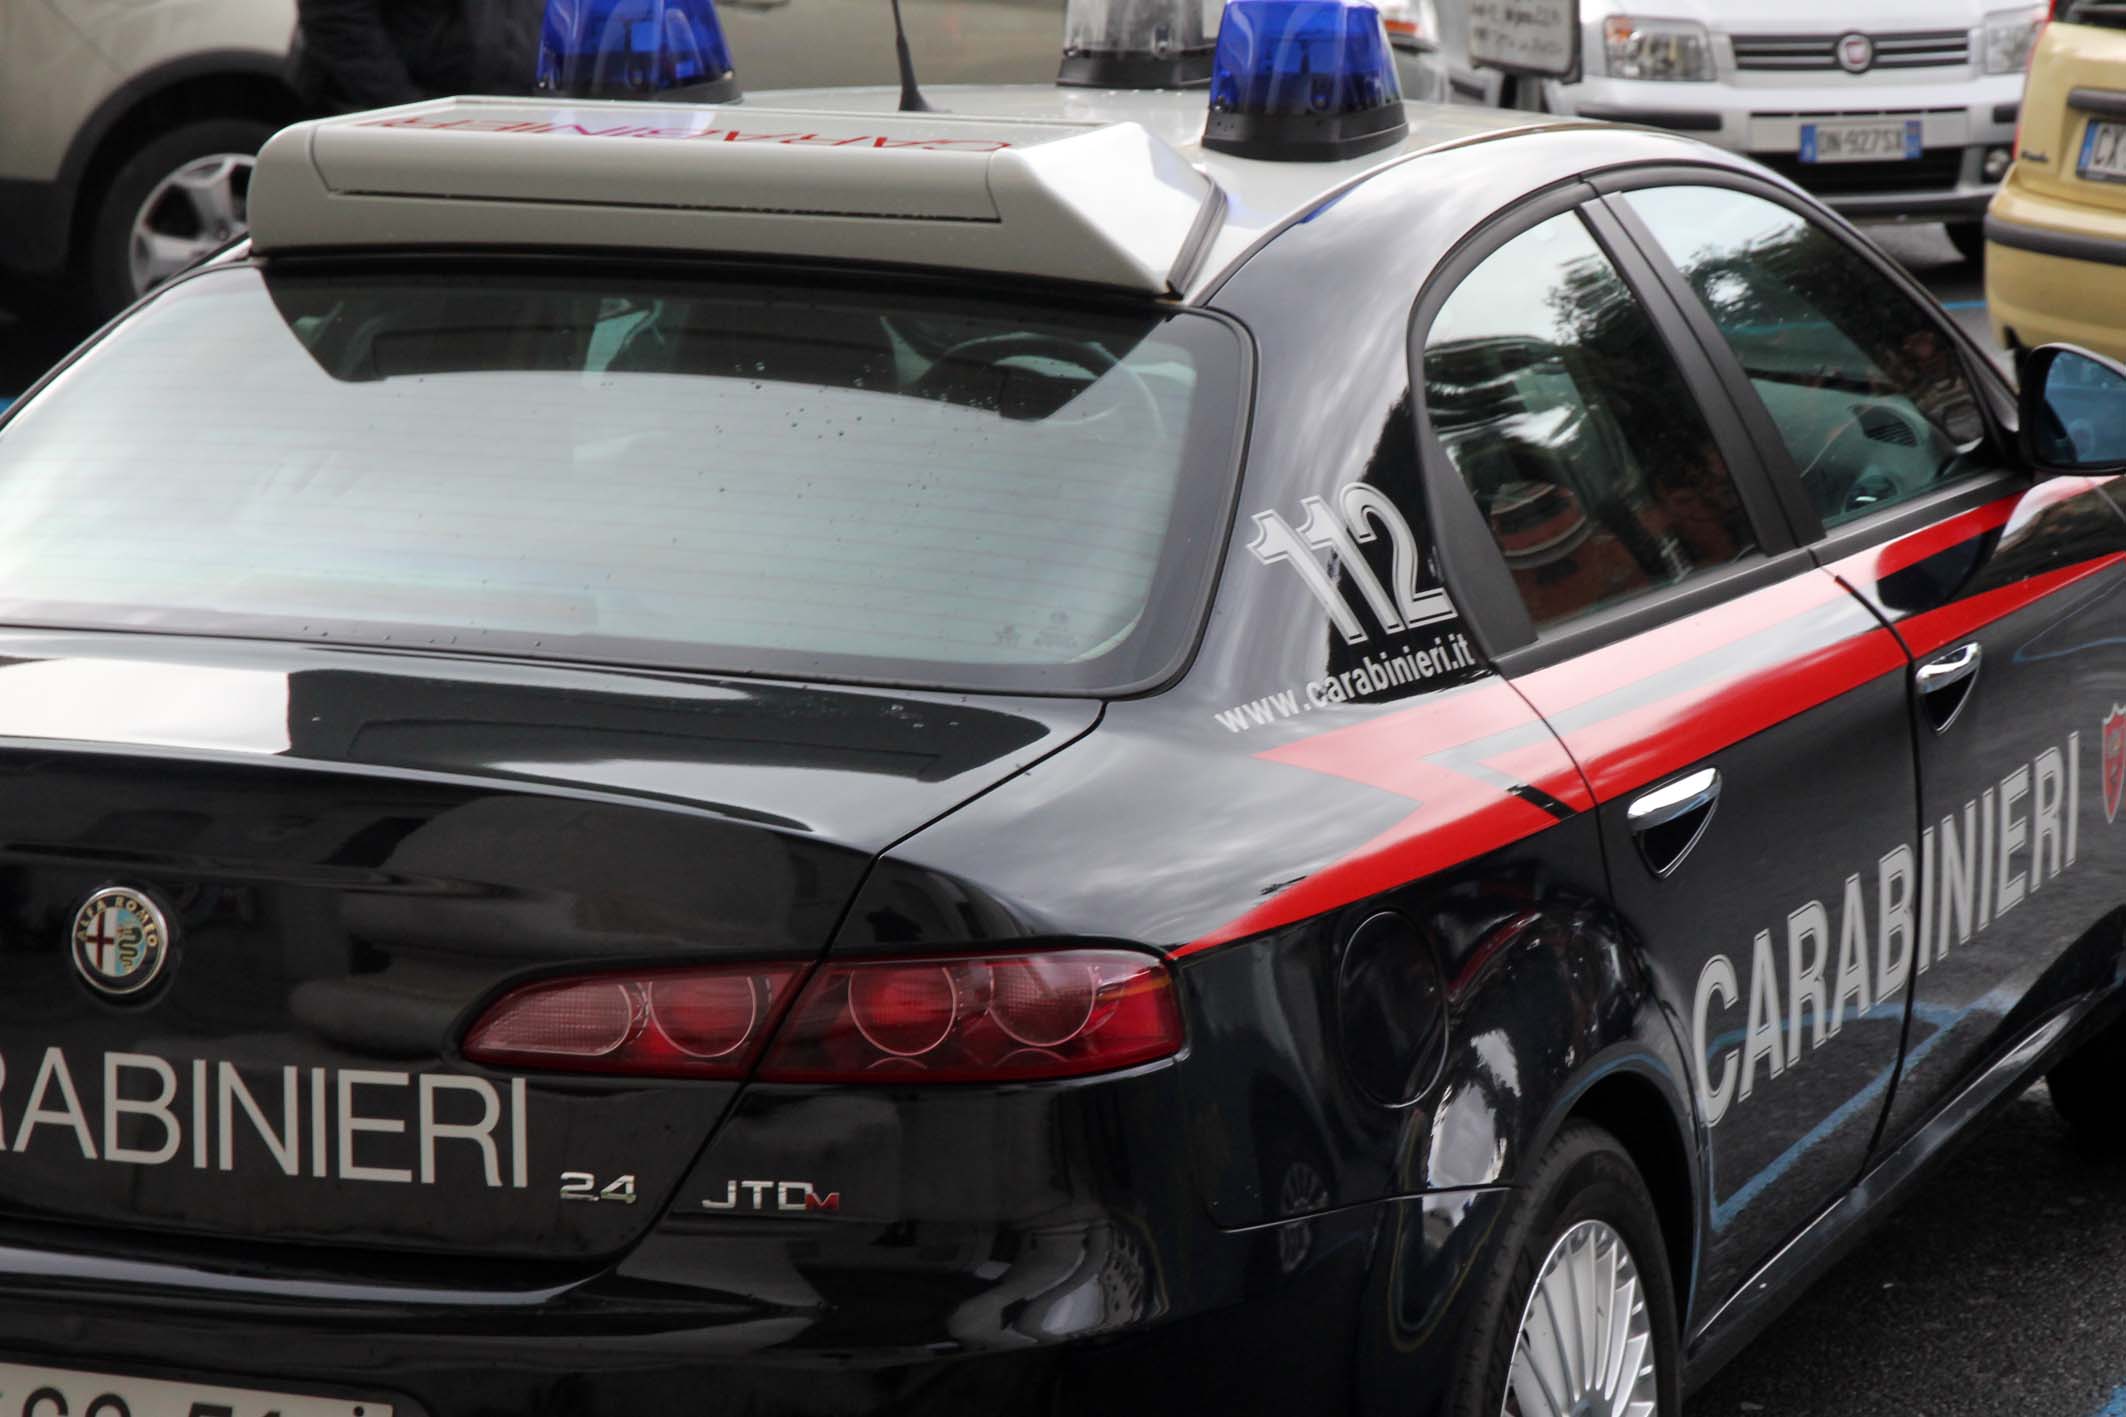 Usa cellulare rubato, 42enne denunciato per ricettazione a Castiglione Chiavarese